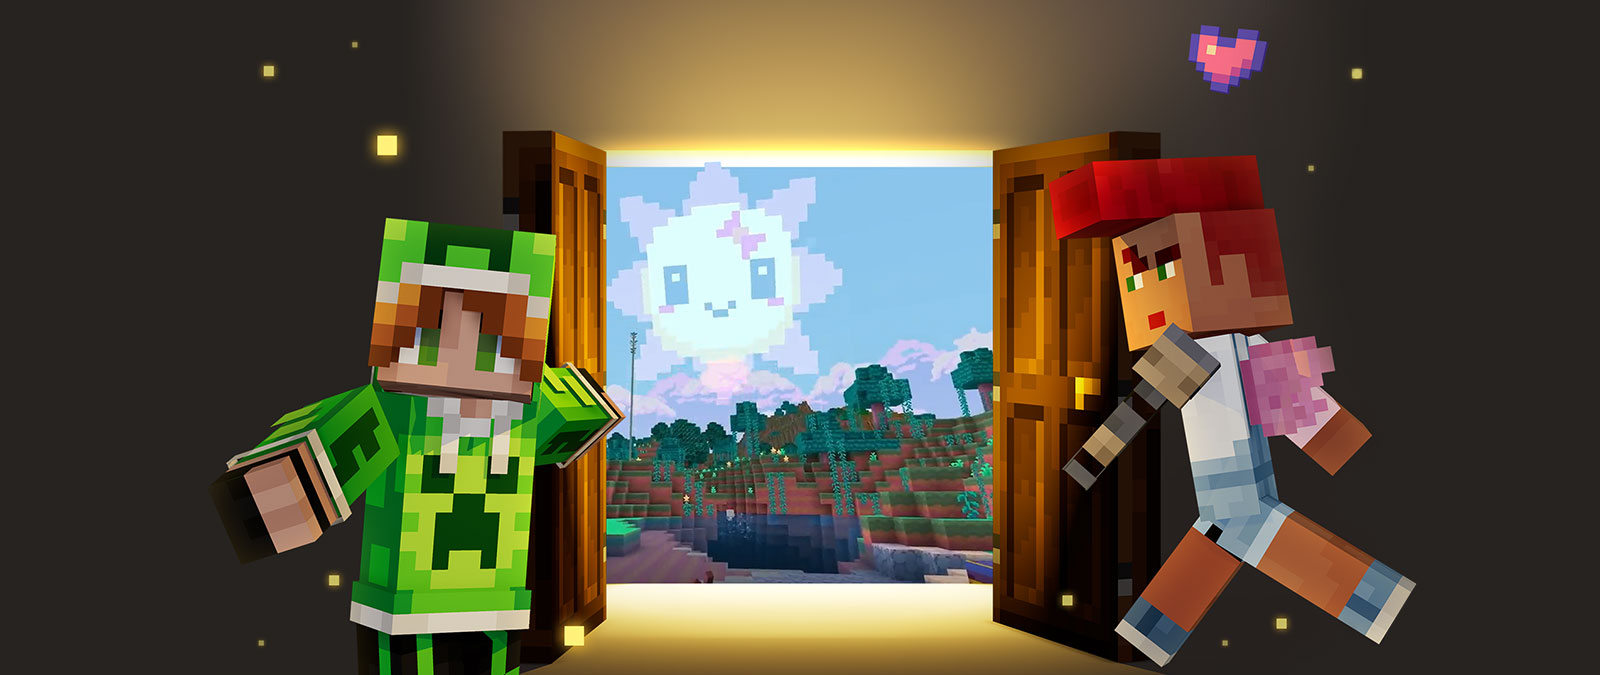 Deux personnages de Minecraft vous accueillent près d’une porte donnant sur le monde de Minecraft.